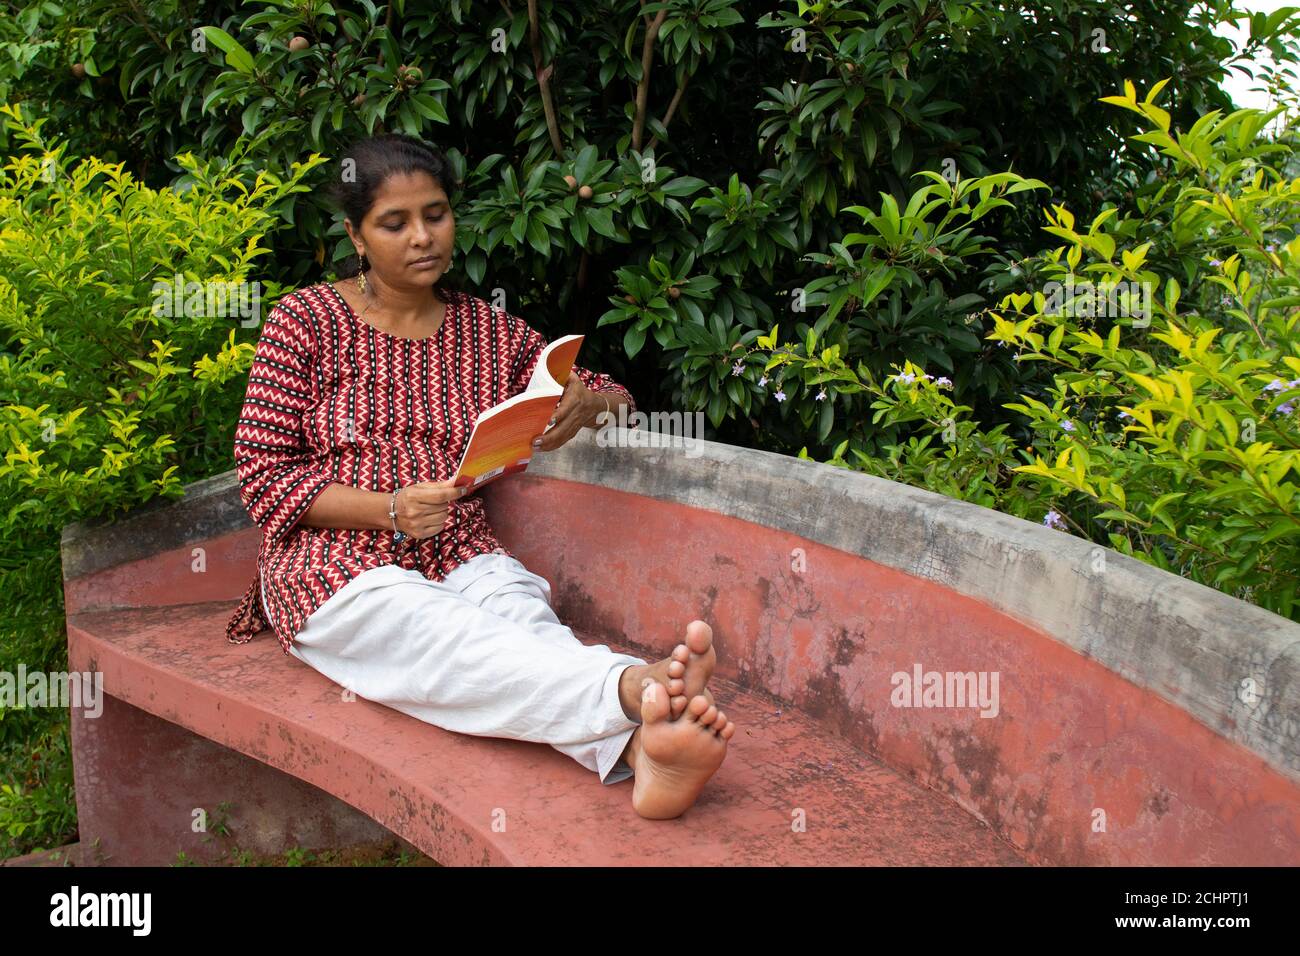 Eine schöne Frau in legerer Kleidung, die auf einer roten Bank sitzt, liest ein Buch und denkt über die Geschichte in einem Park nach Stockfoto